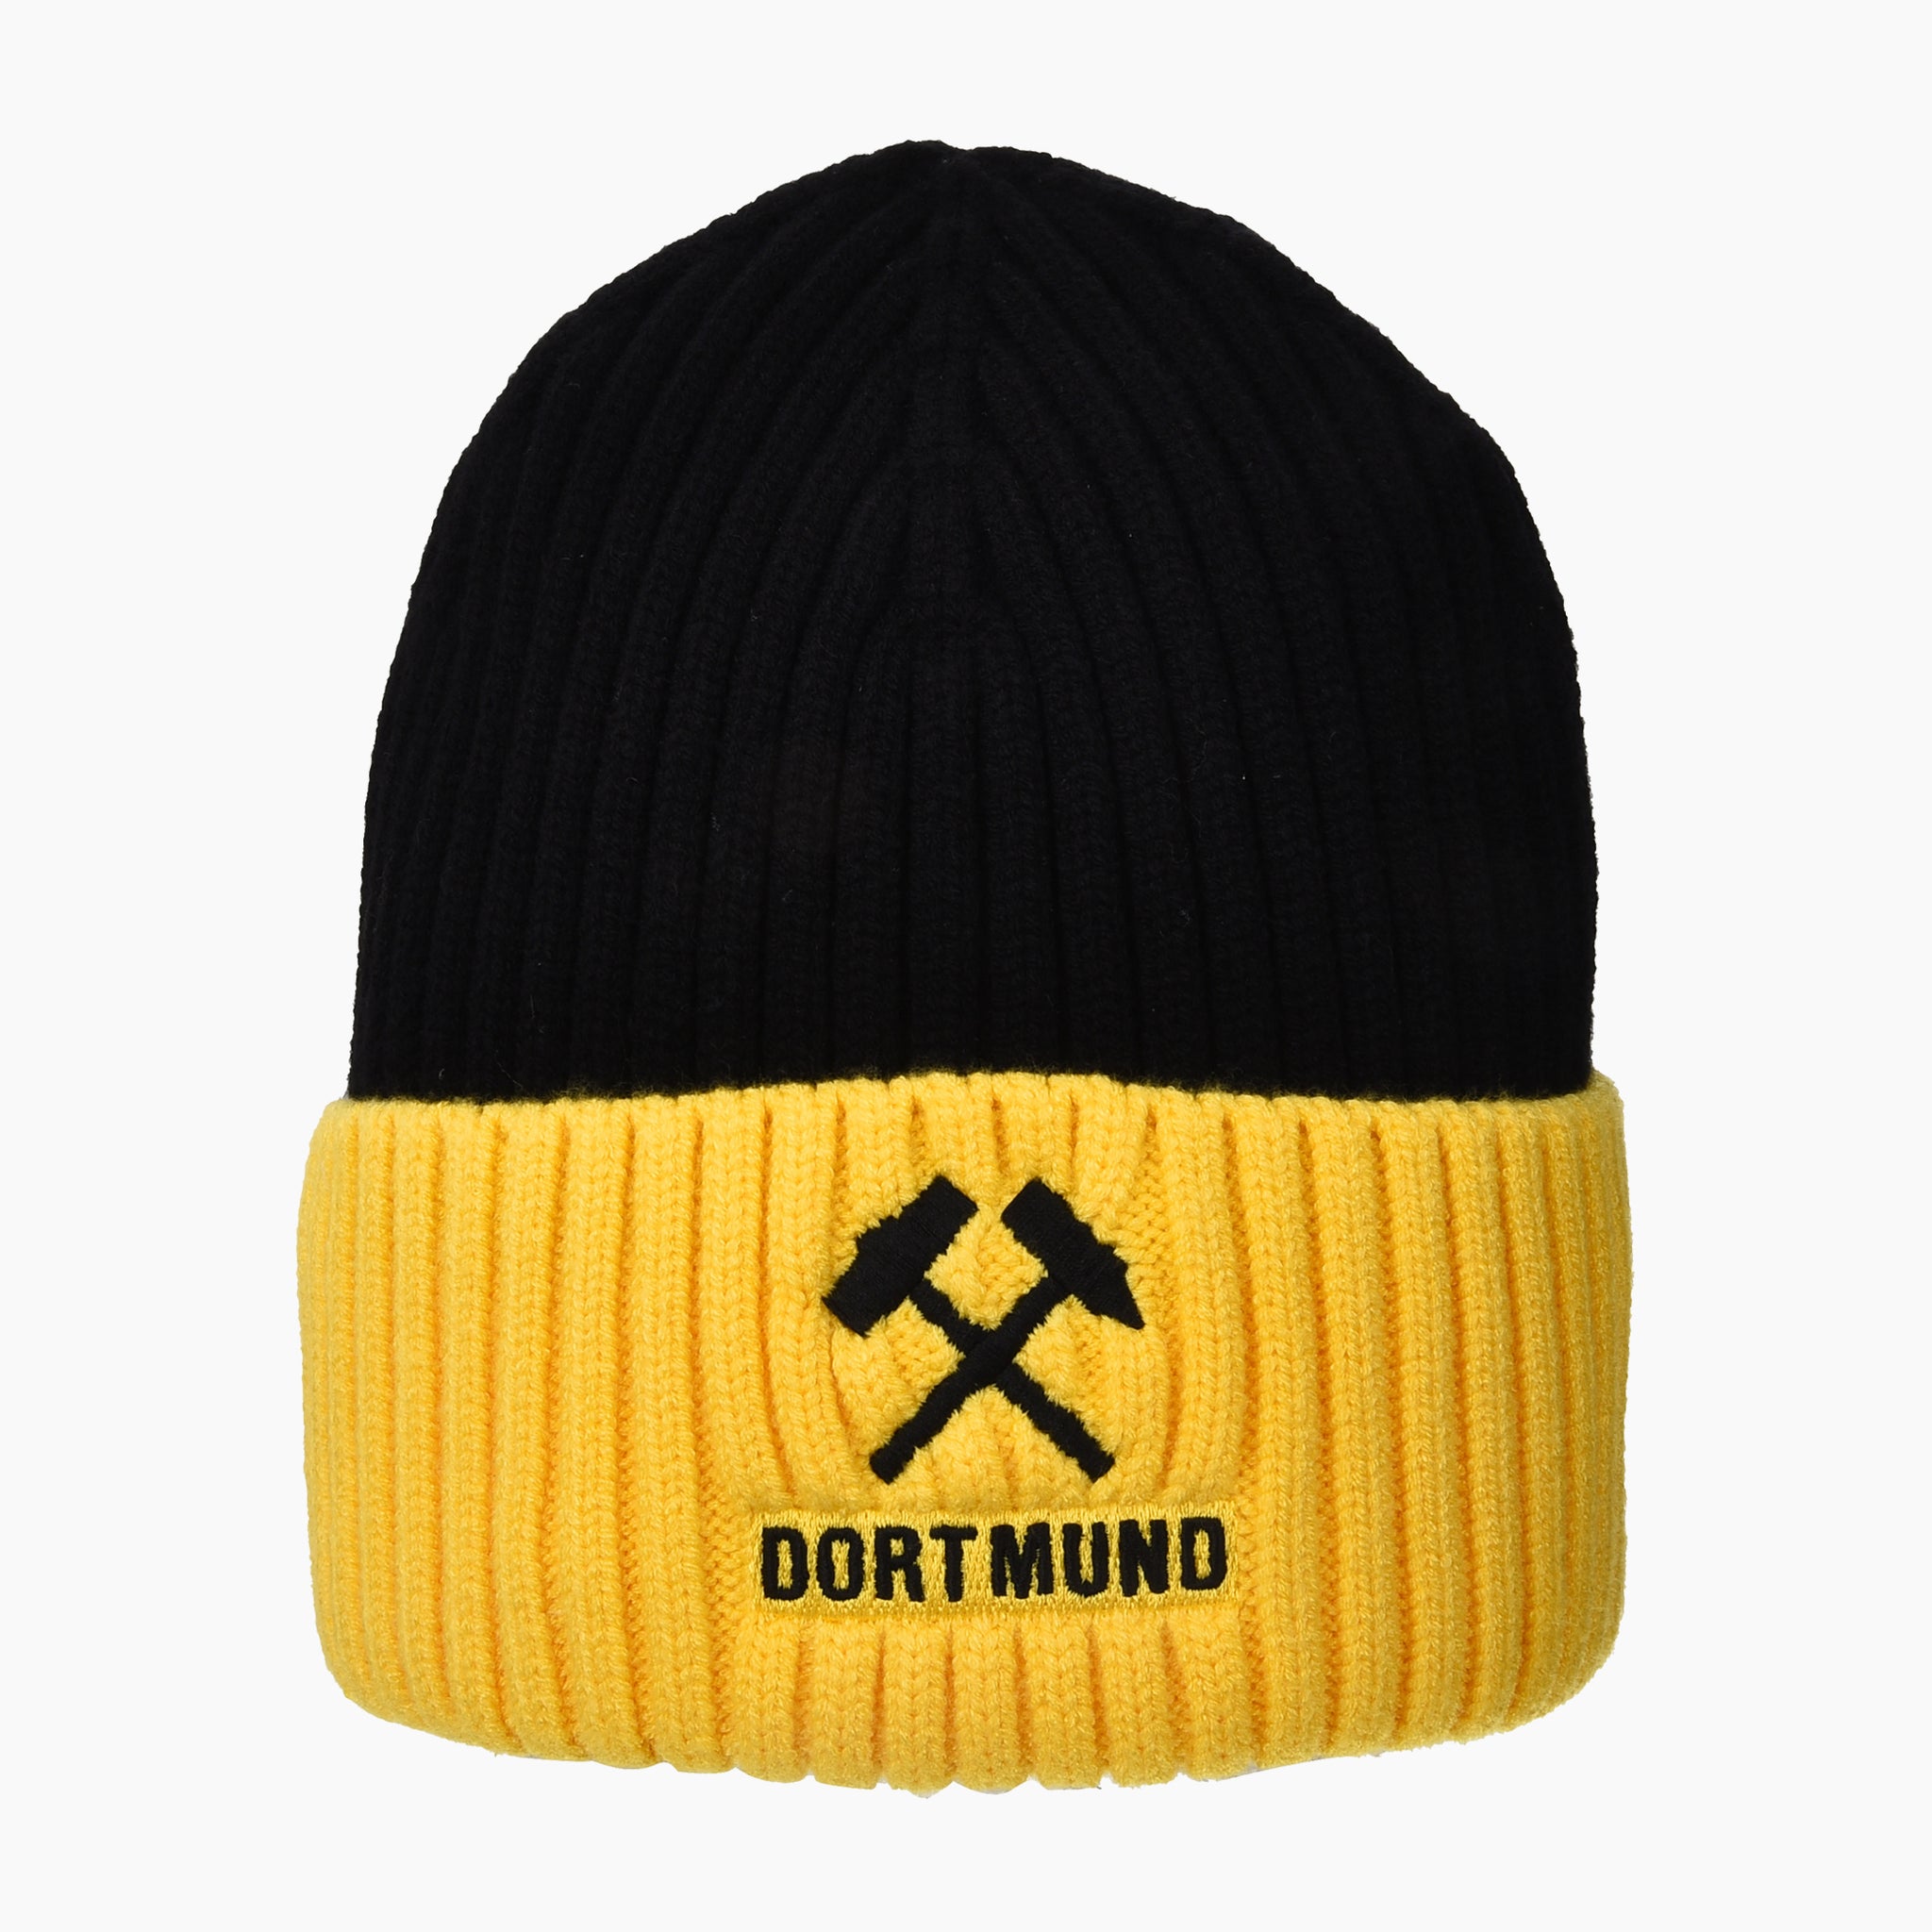 Dortmund Beanie Winter Hat - Robin Ruth